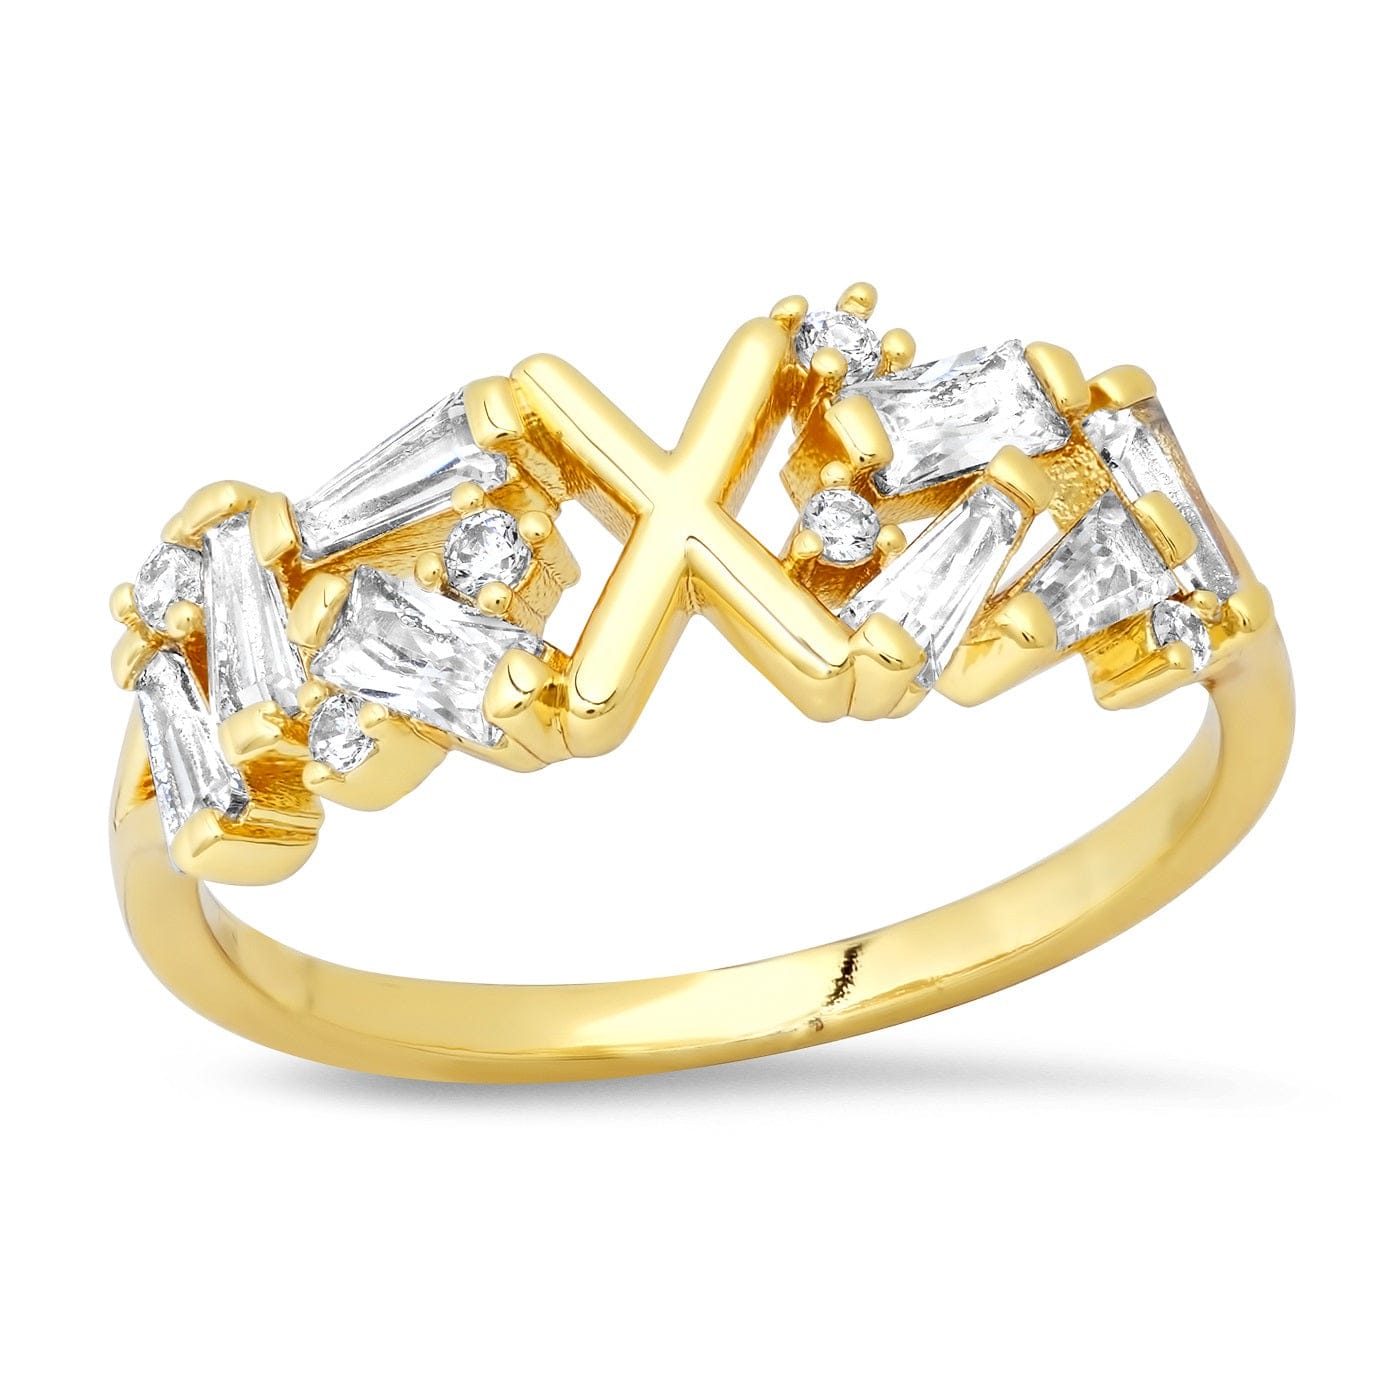 TAI JEWELRY Rings 6 / X Baguette Initial Ring